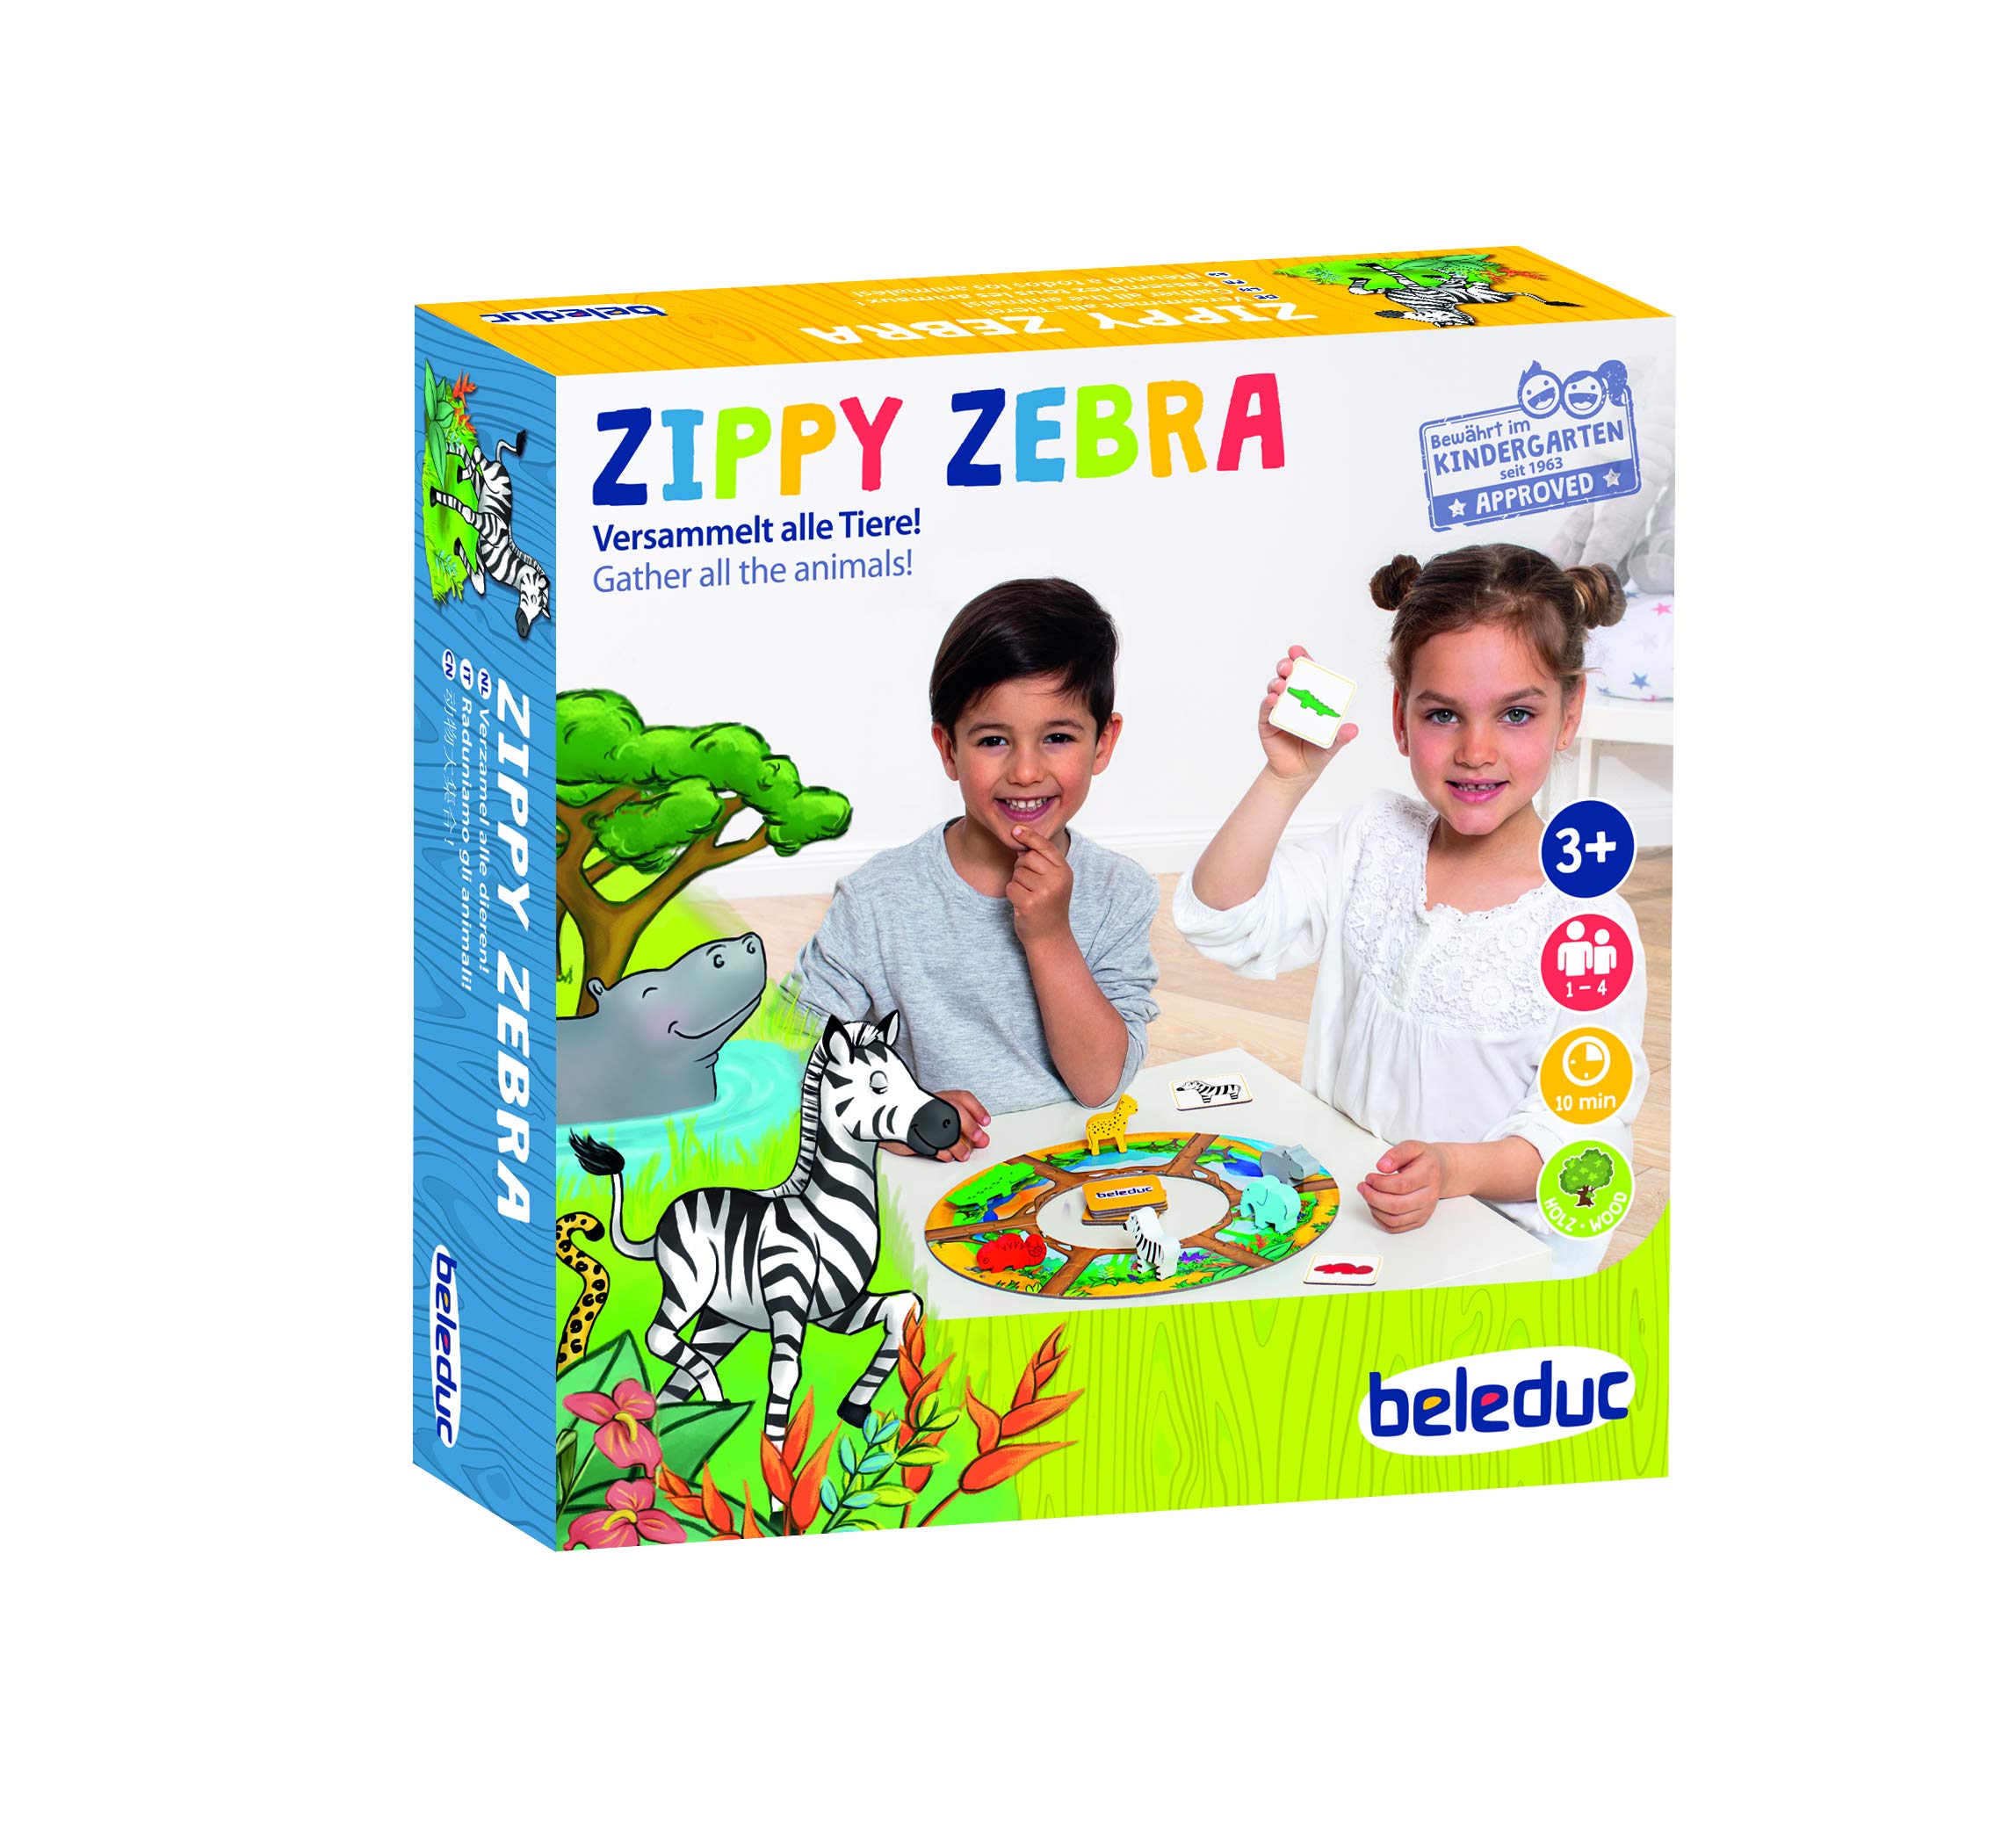 Beleduc - Zippy Zebra - Lernspiel für Zuhause - Bekannt aus dem Kindergarten